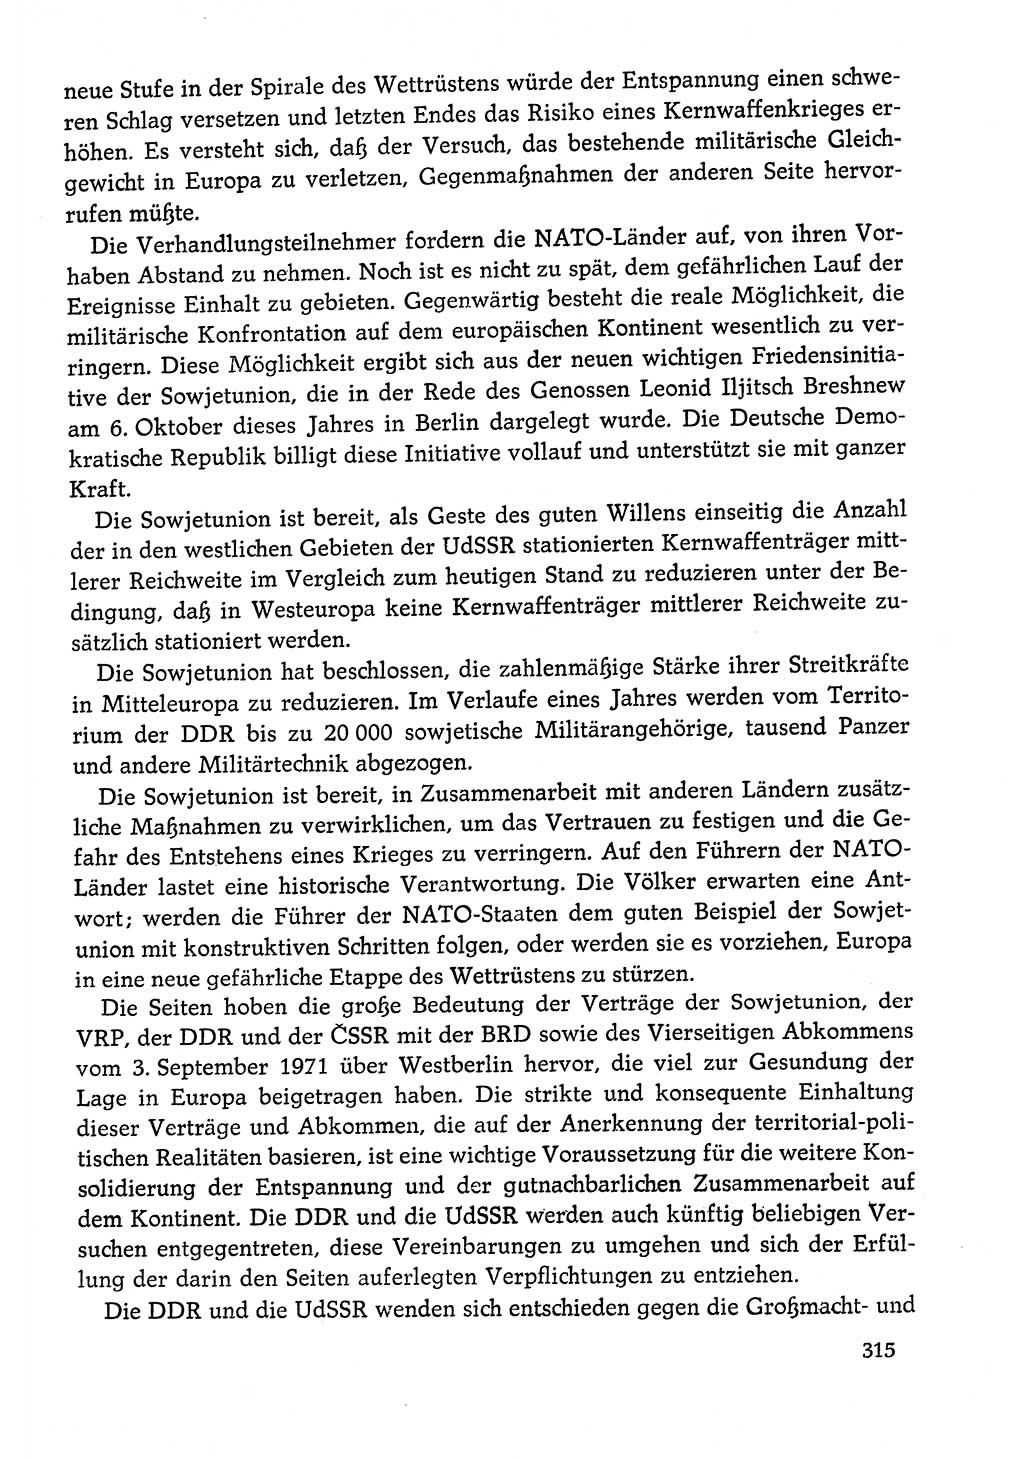 Dokumente der Sozialistischen Einheitspartei Deutschlands (SED) [Deutsche Demokratische Republik (DDR)] 1978-1979, Seite 315 (Dok. SED DDR 1978-1979, S. 315)